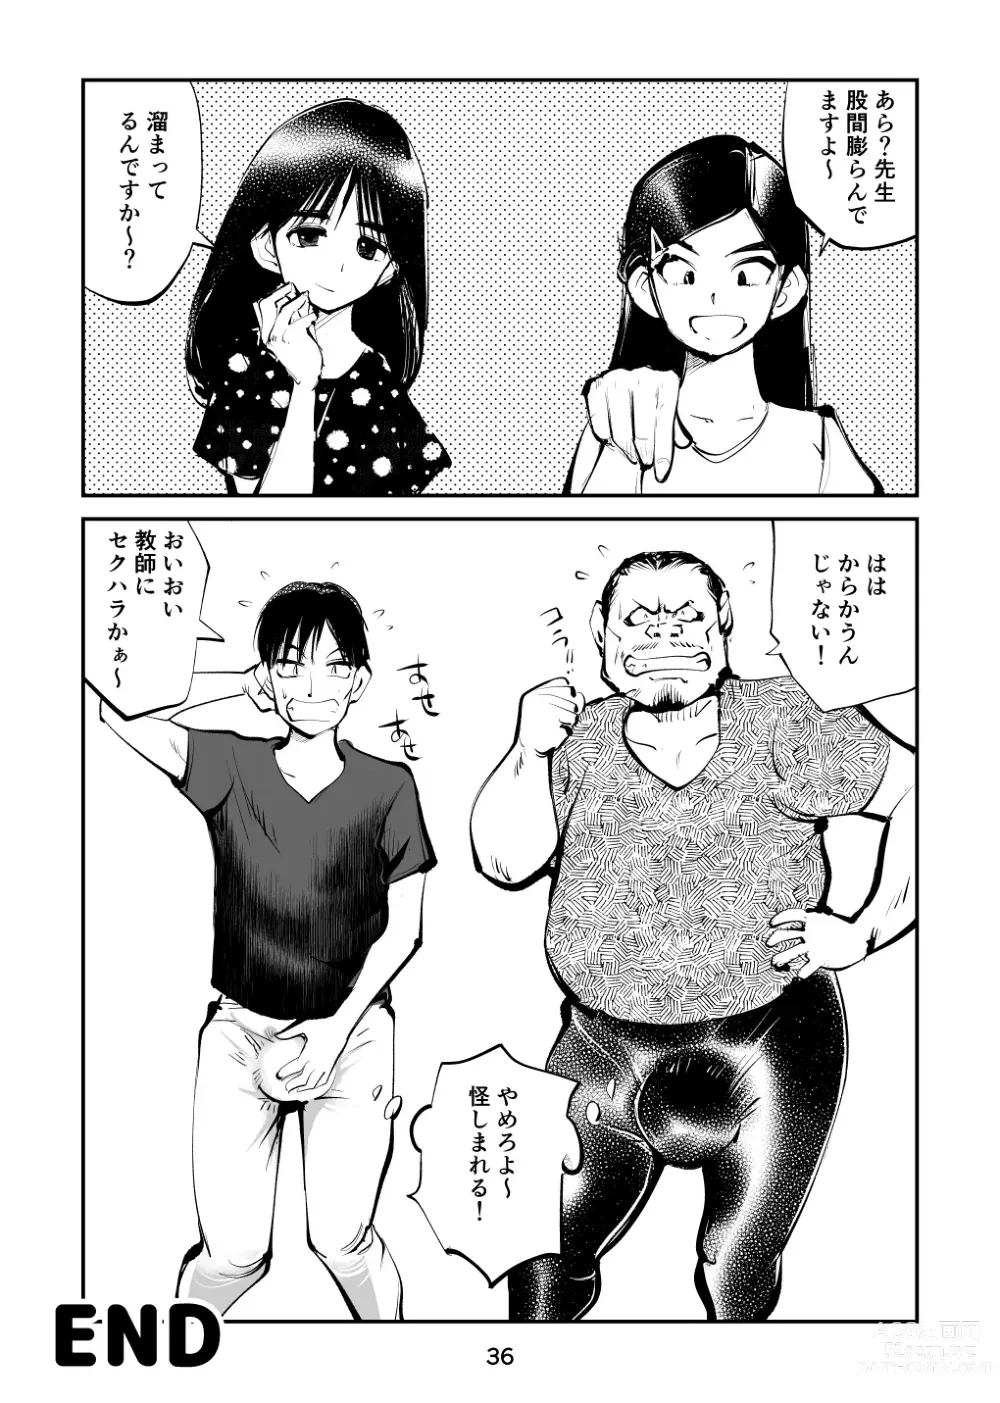 Page 36 of doujinshi Chinpo Shiikukakari 5